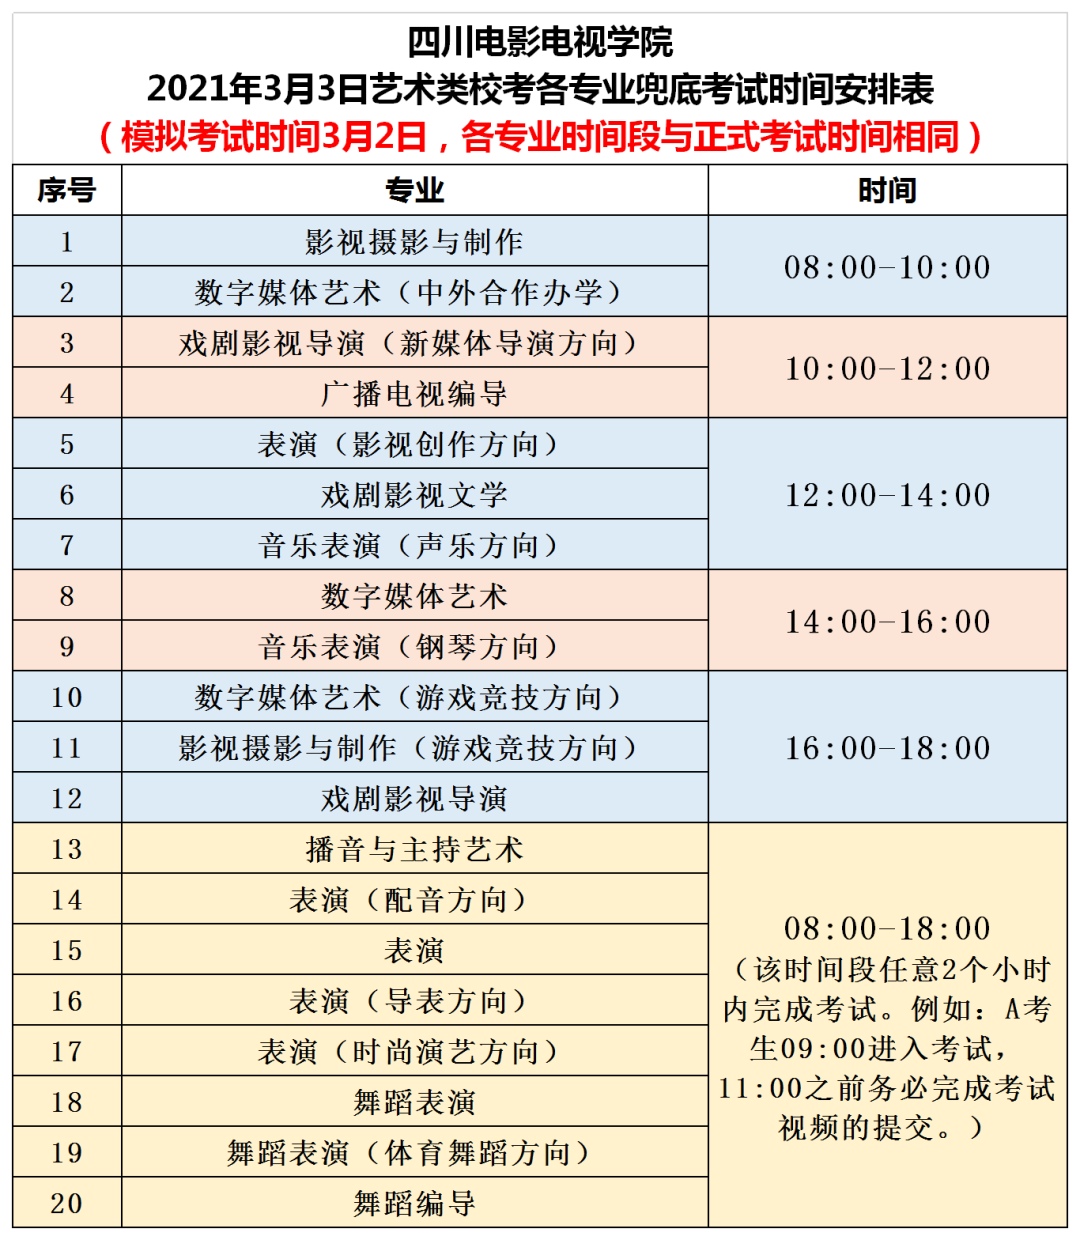 四川电影电视学院2021年3月3日艺术类校考兜底考试公告（仅限2月28日当日未完成考试学生）